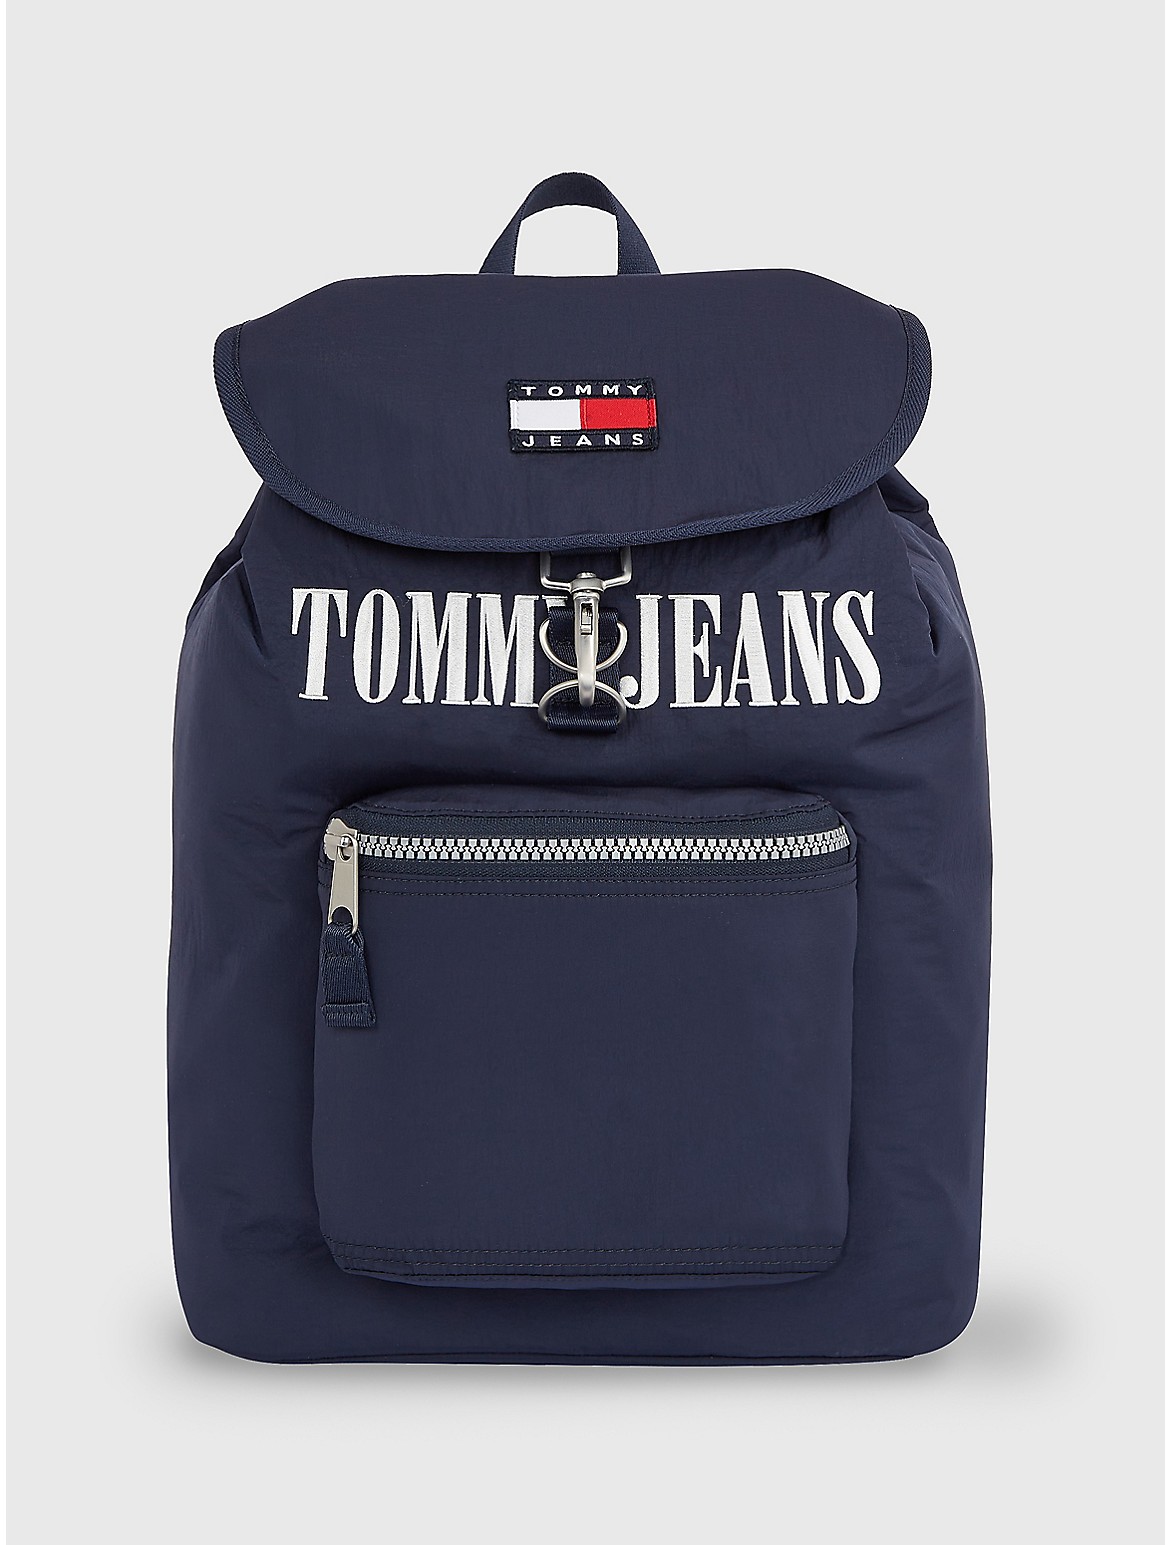 Tommy Hilfiger Men's TJ Heritage Flap Backpack